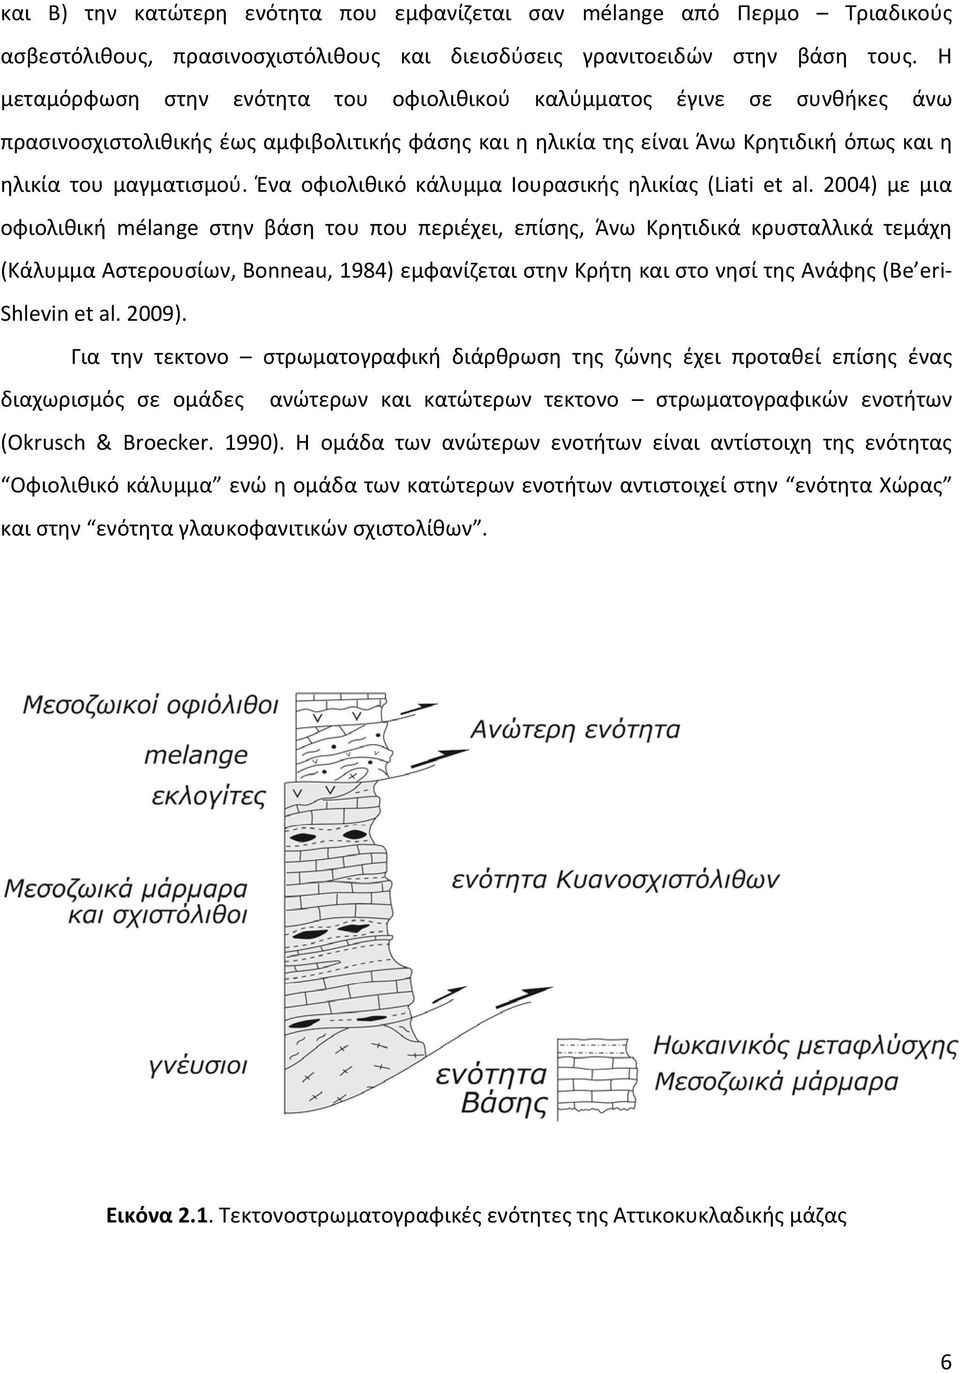 Ένα οφιολιθικό κάλυμμα Ιουρασικής ηλικίας (Liati et al.